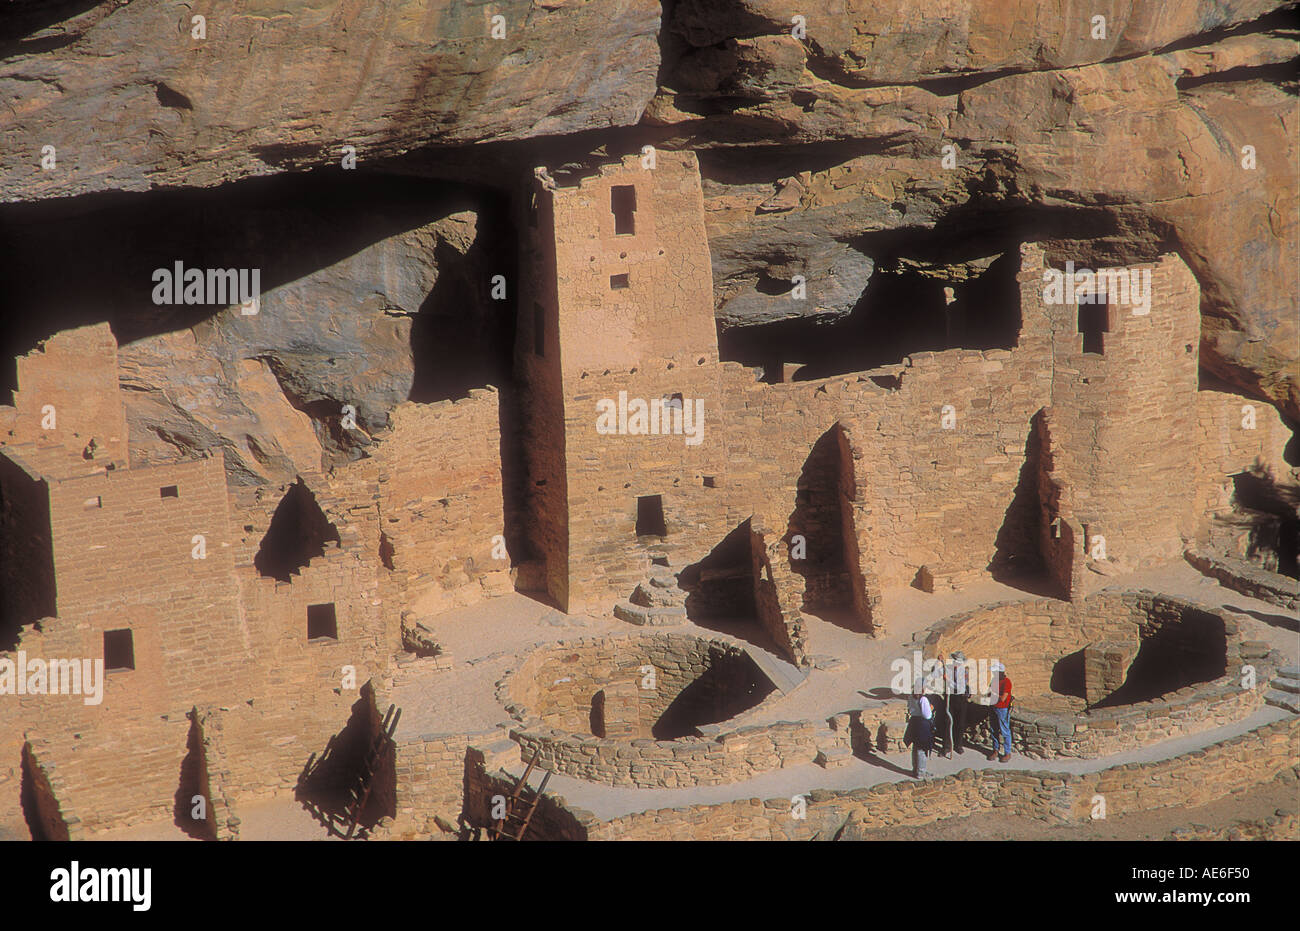 Las antiguas ruinas de la ruina de la Casa Blanca construida por los indios anasazi en Monumento Nacional Cañón de Chelly Arizona, EE.UU. formato horizontal Foto de stock